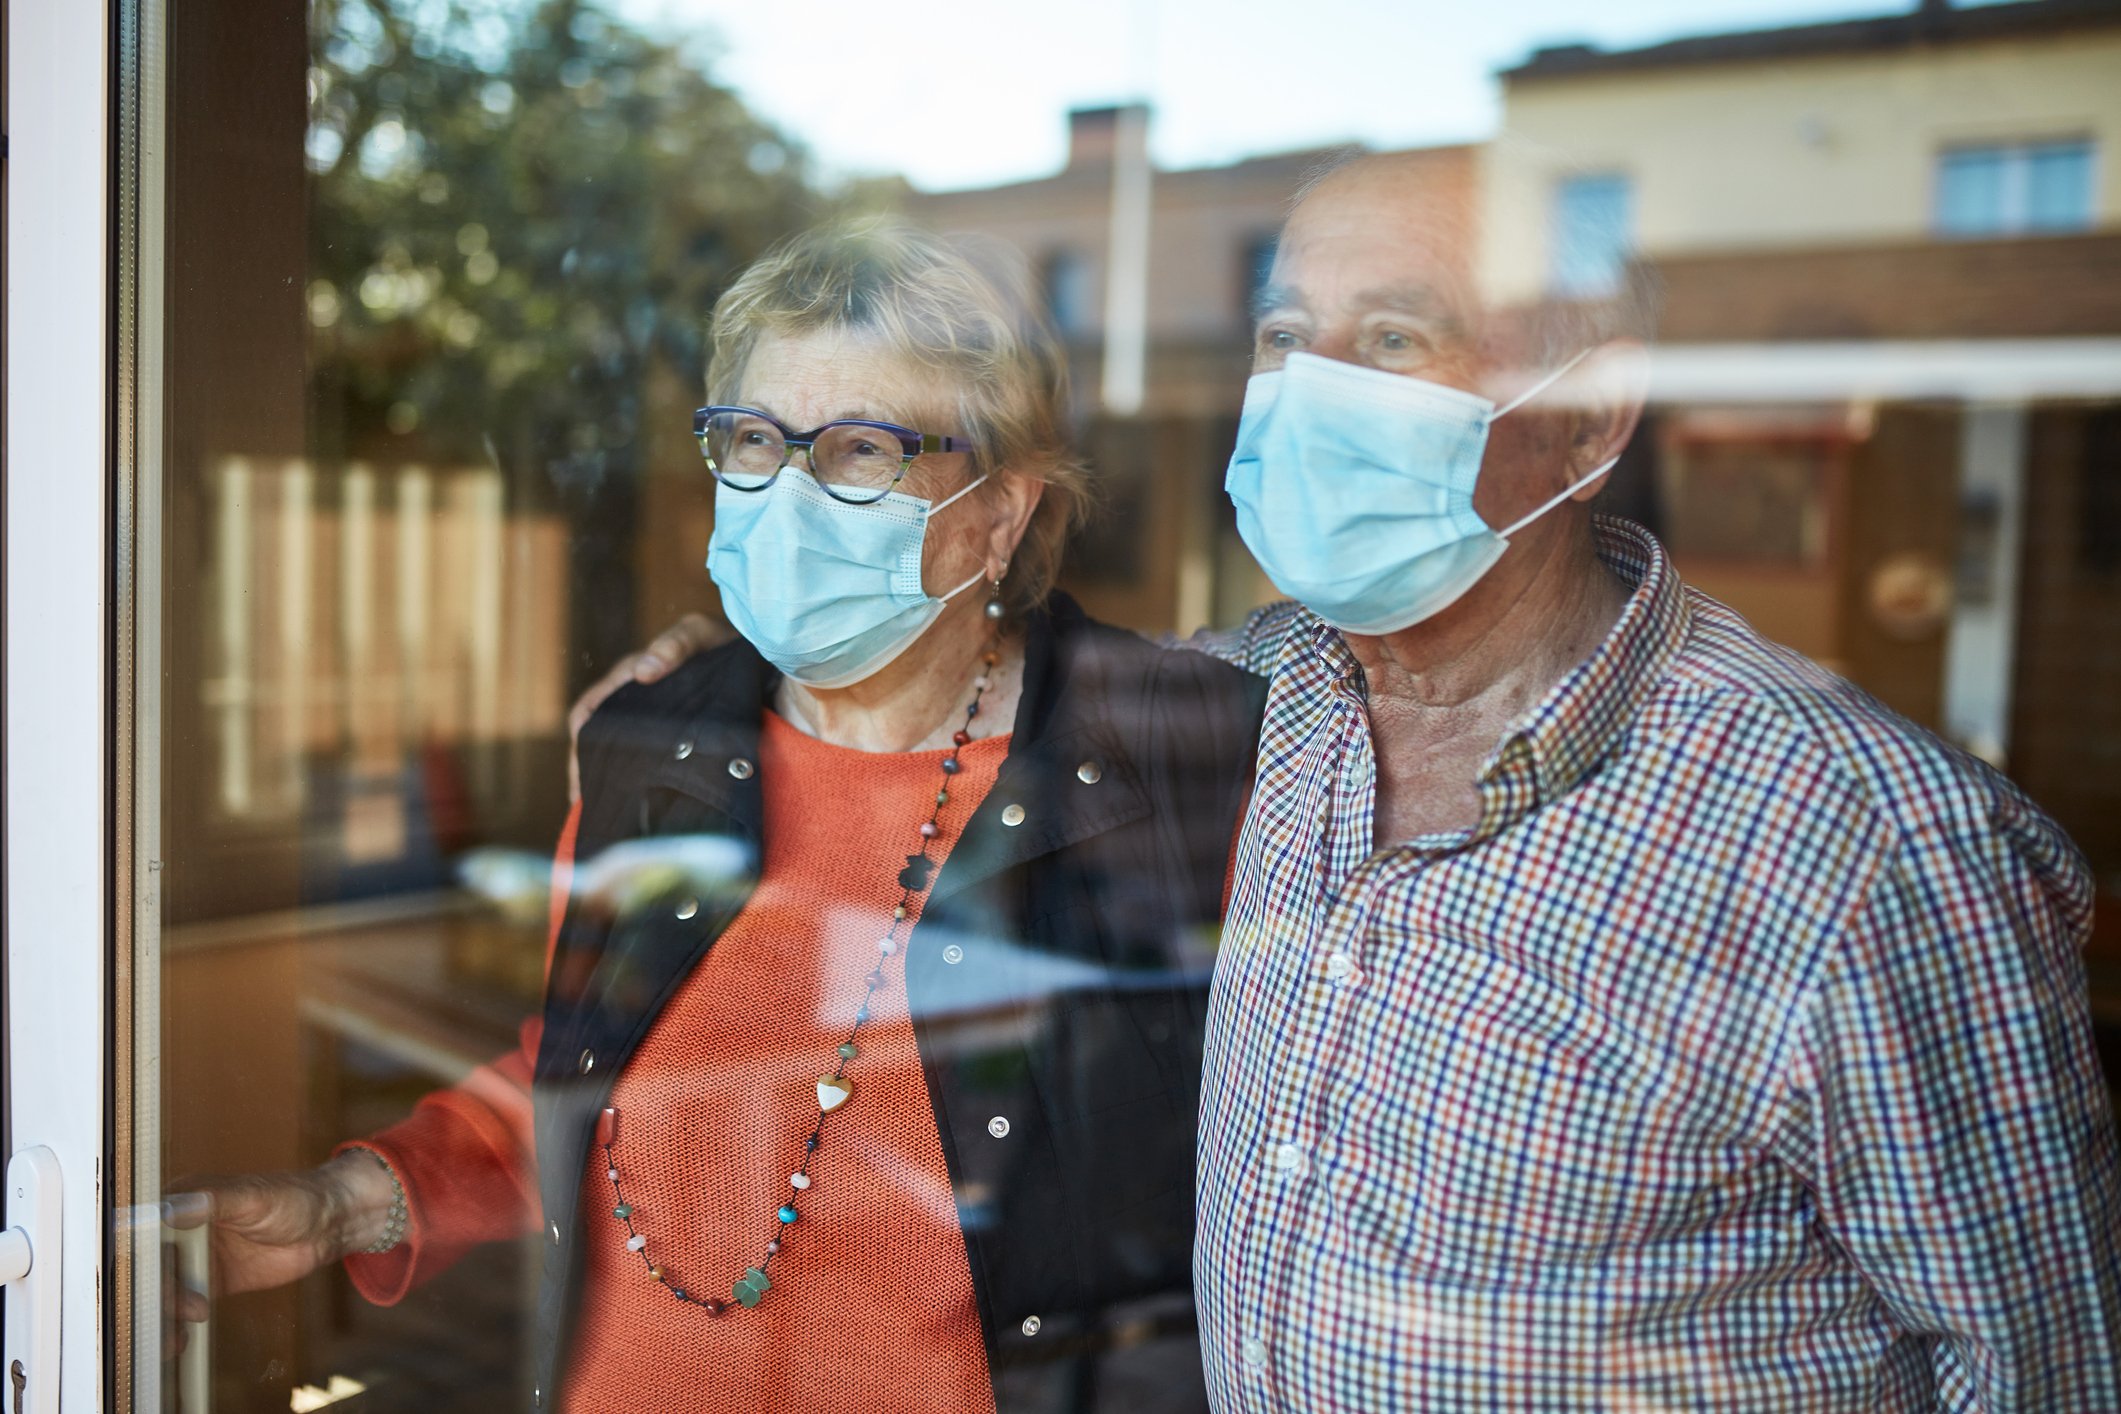 Beispielhaftes Bild eines besorgten älteren Paares, das mit Masken aus dem Fenster schaut | Quelle: Getty Images